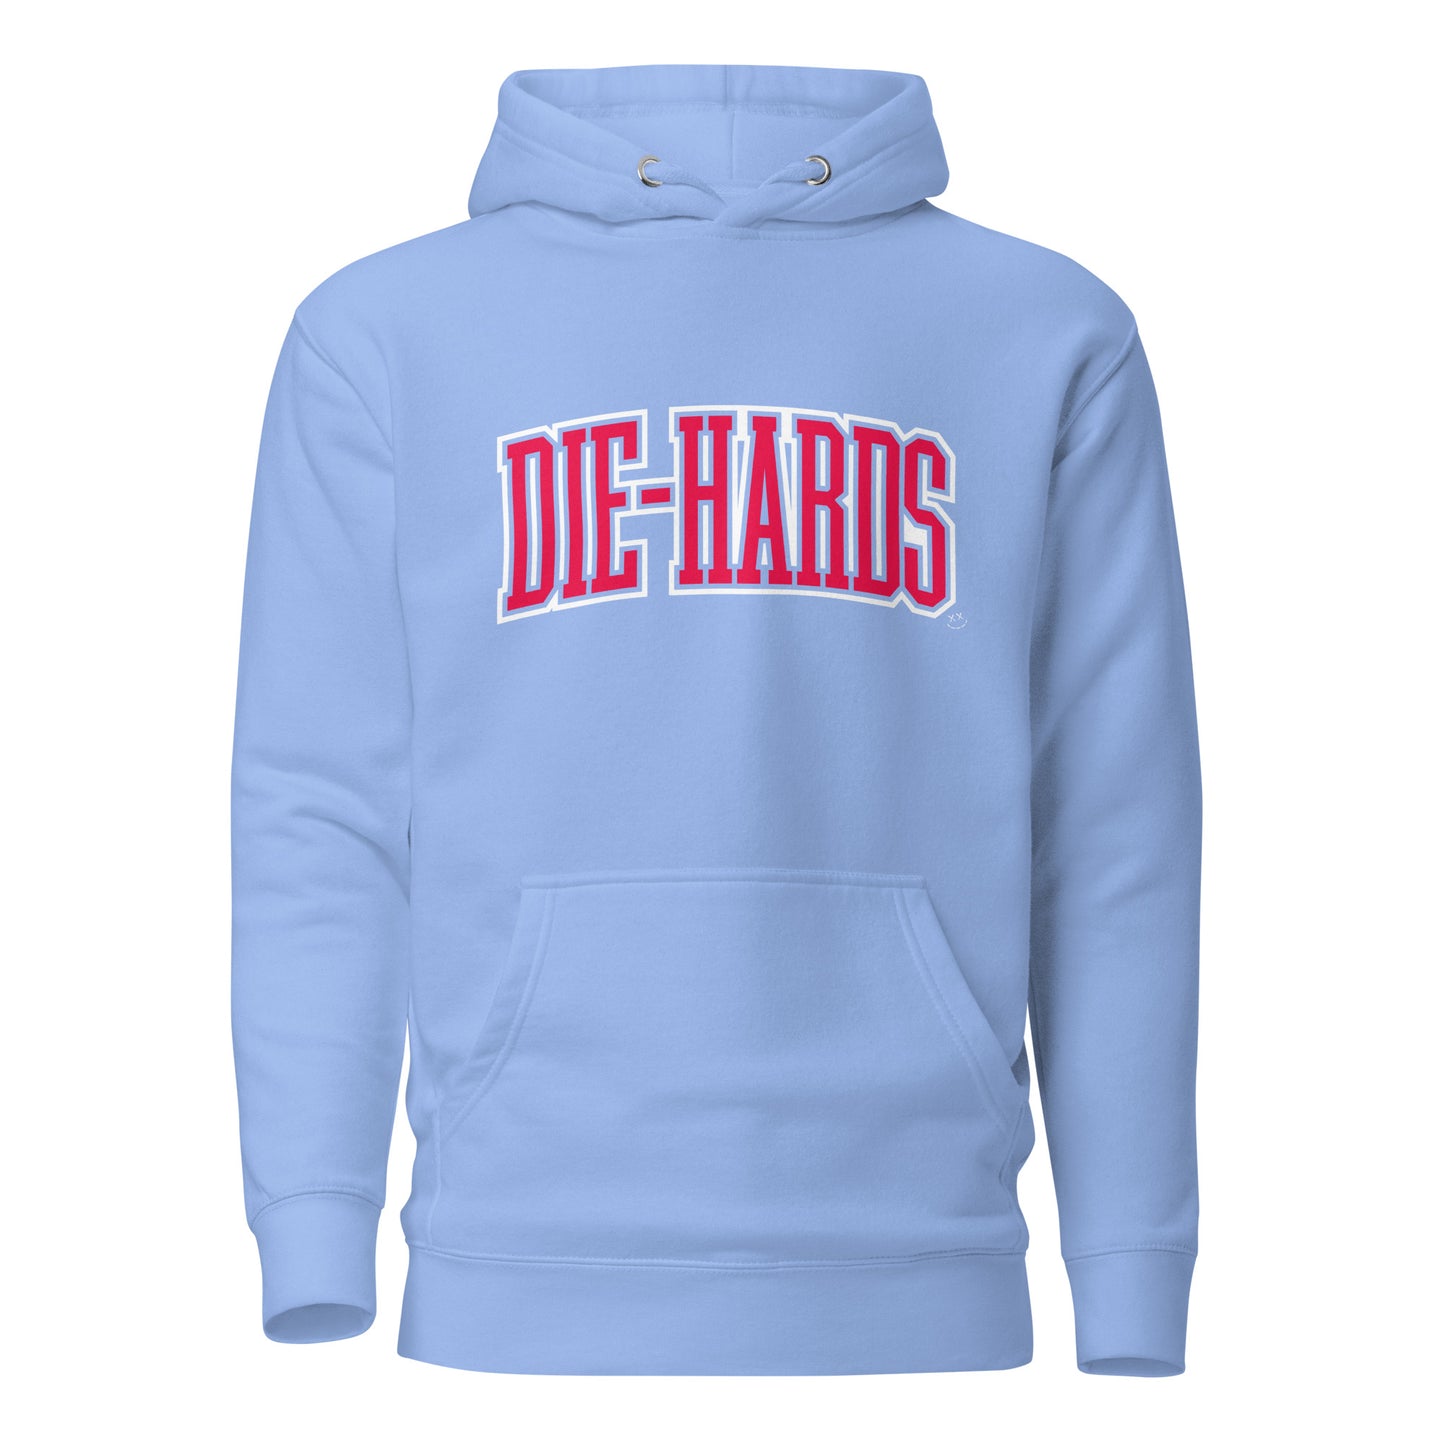 Die-hards Team Hoodie